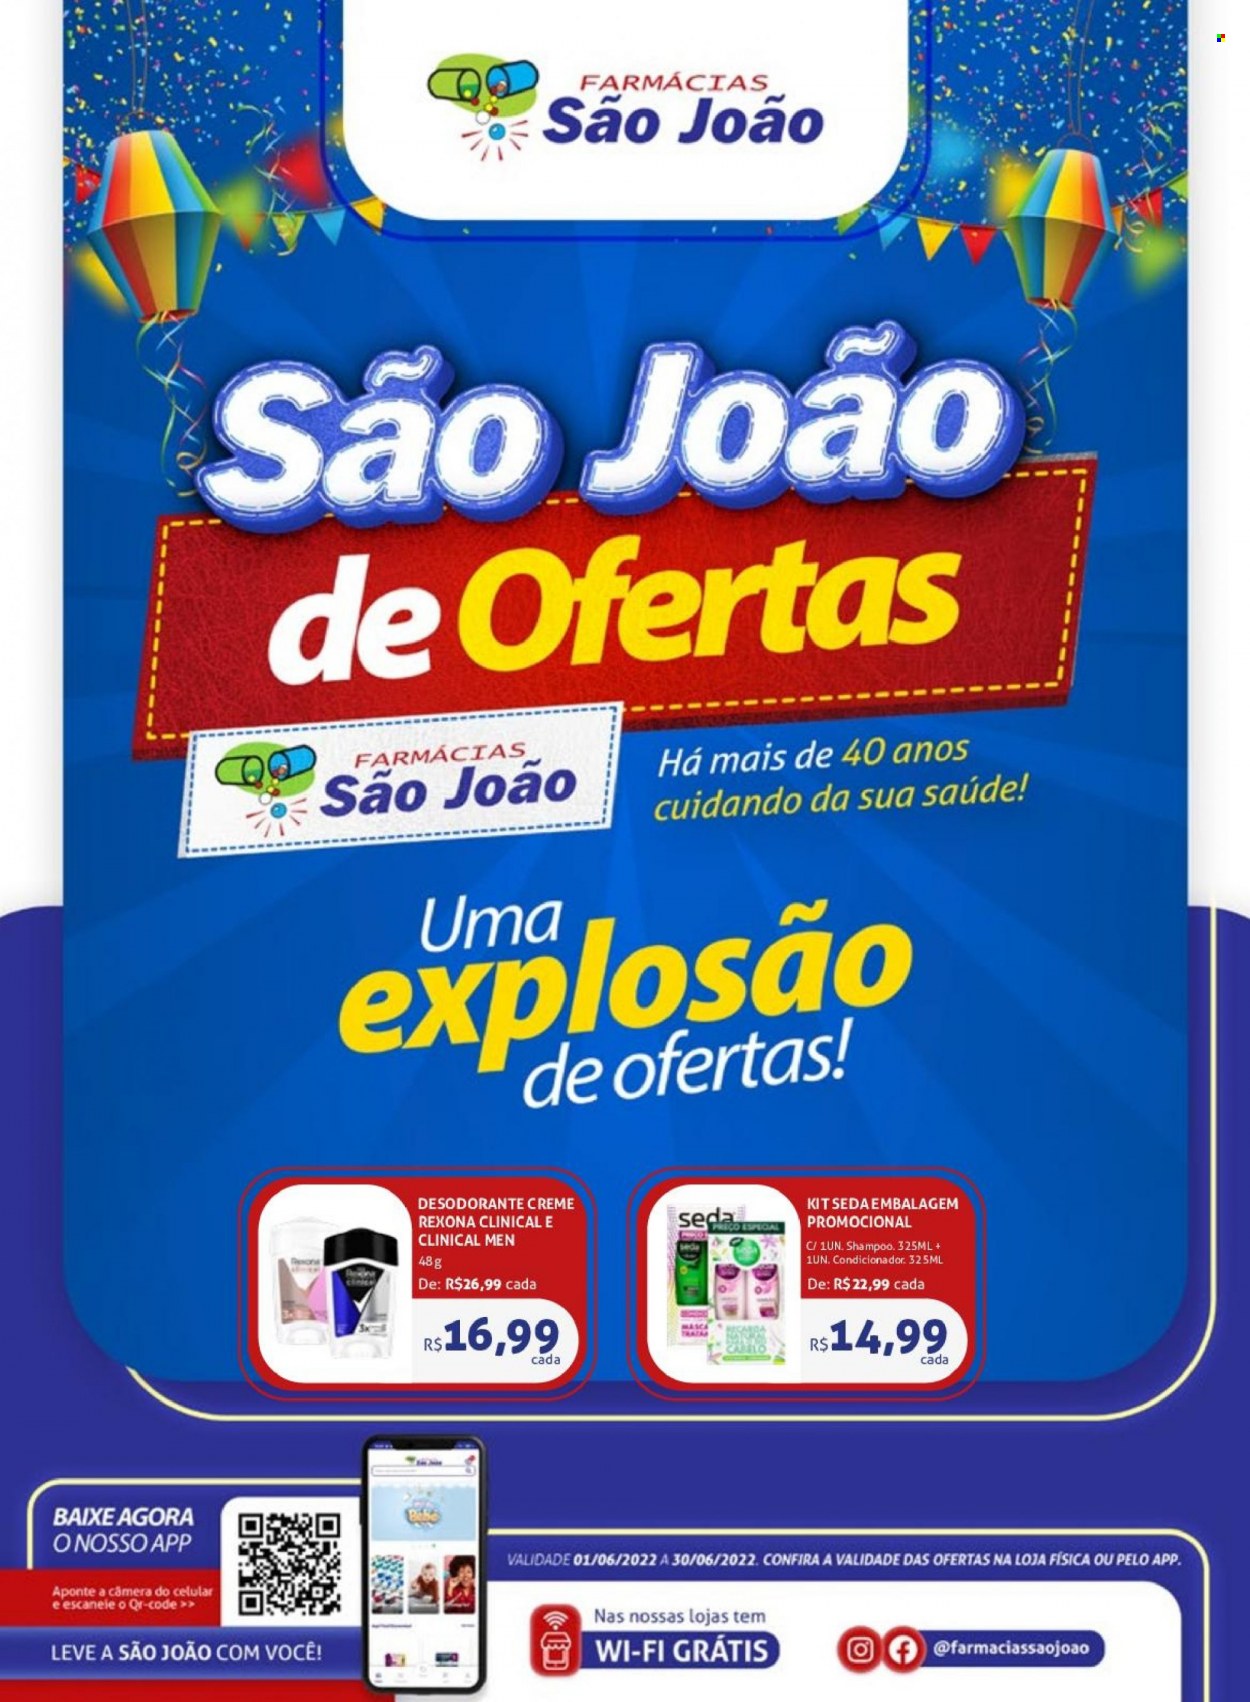 Encarte Farmácias São João  - 01.06.2022 - 30.06.2022. Página 1.